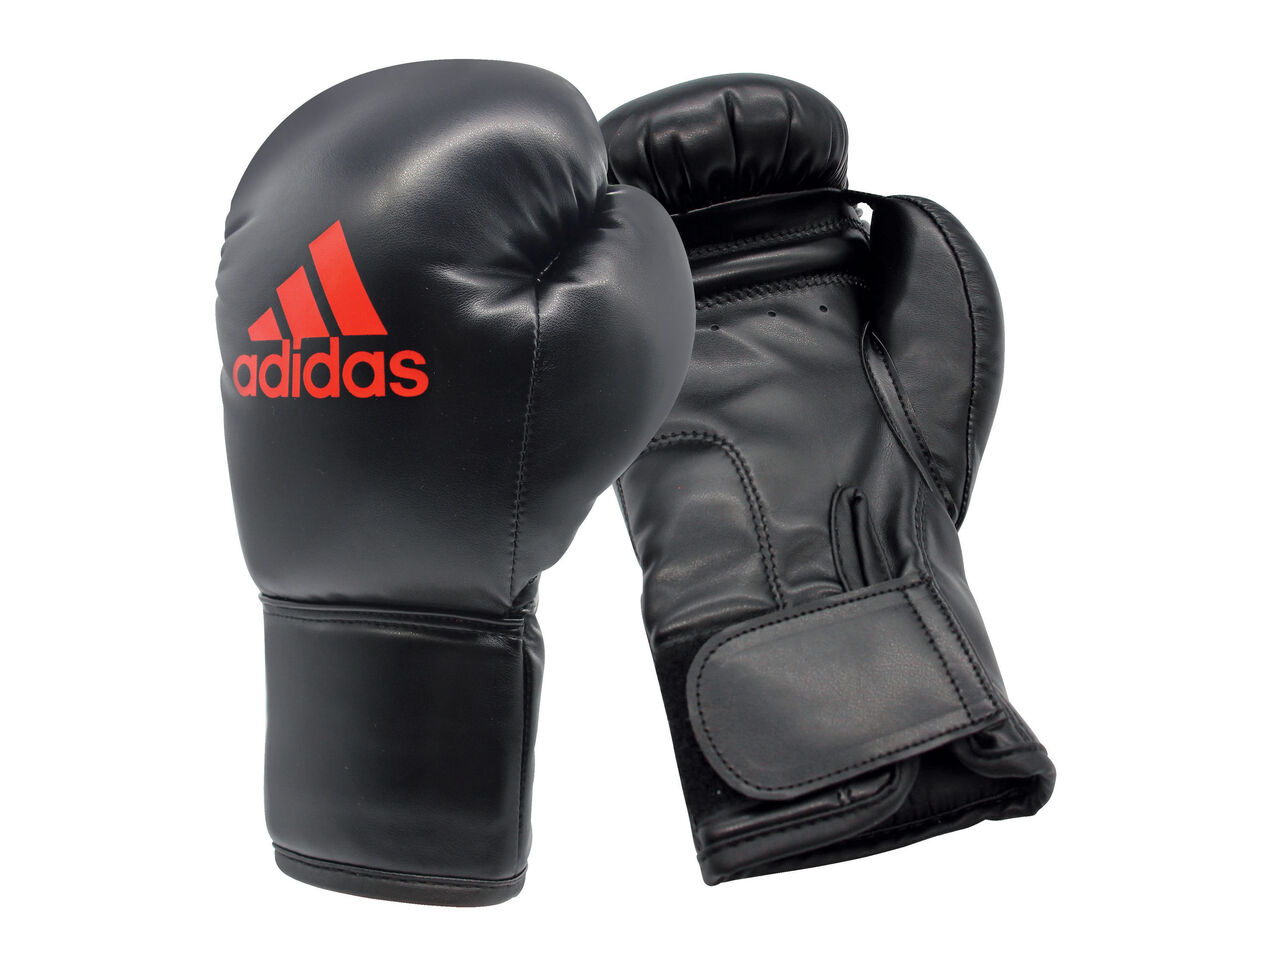 ADIDAS® Zestaw bokserski dla dzieci , cena 149 PLN 
 
- wymiary: 43 x 19 cm
- ...